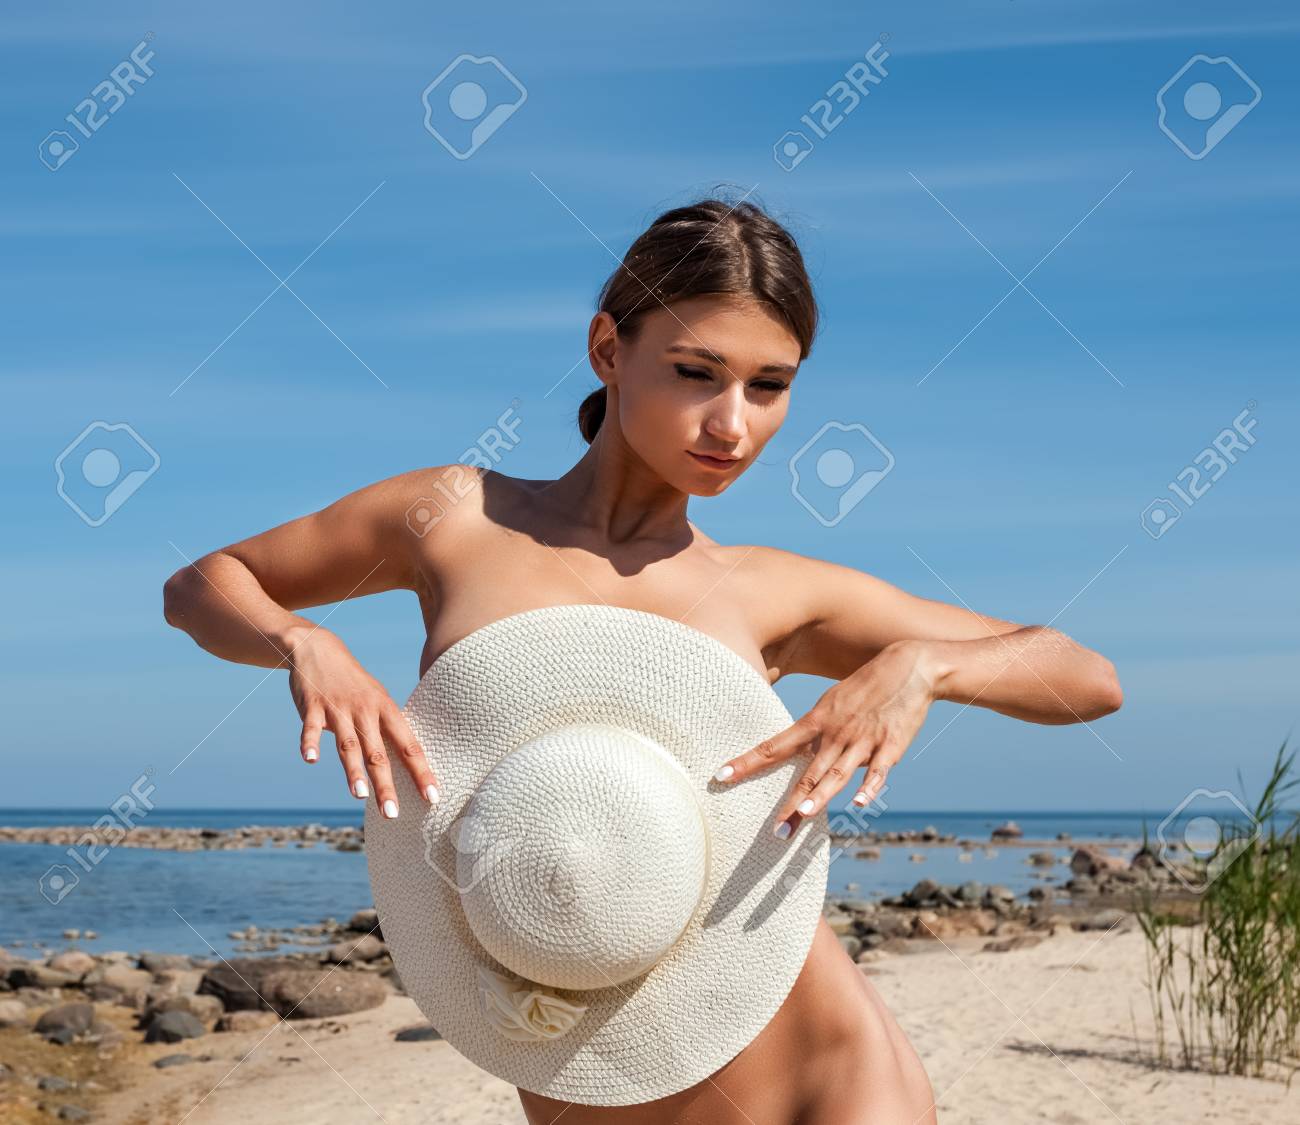 Nude woman in beach